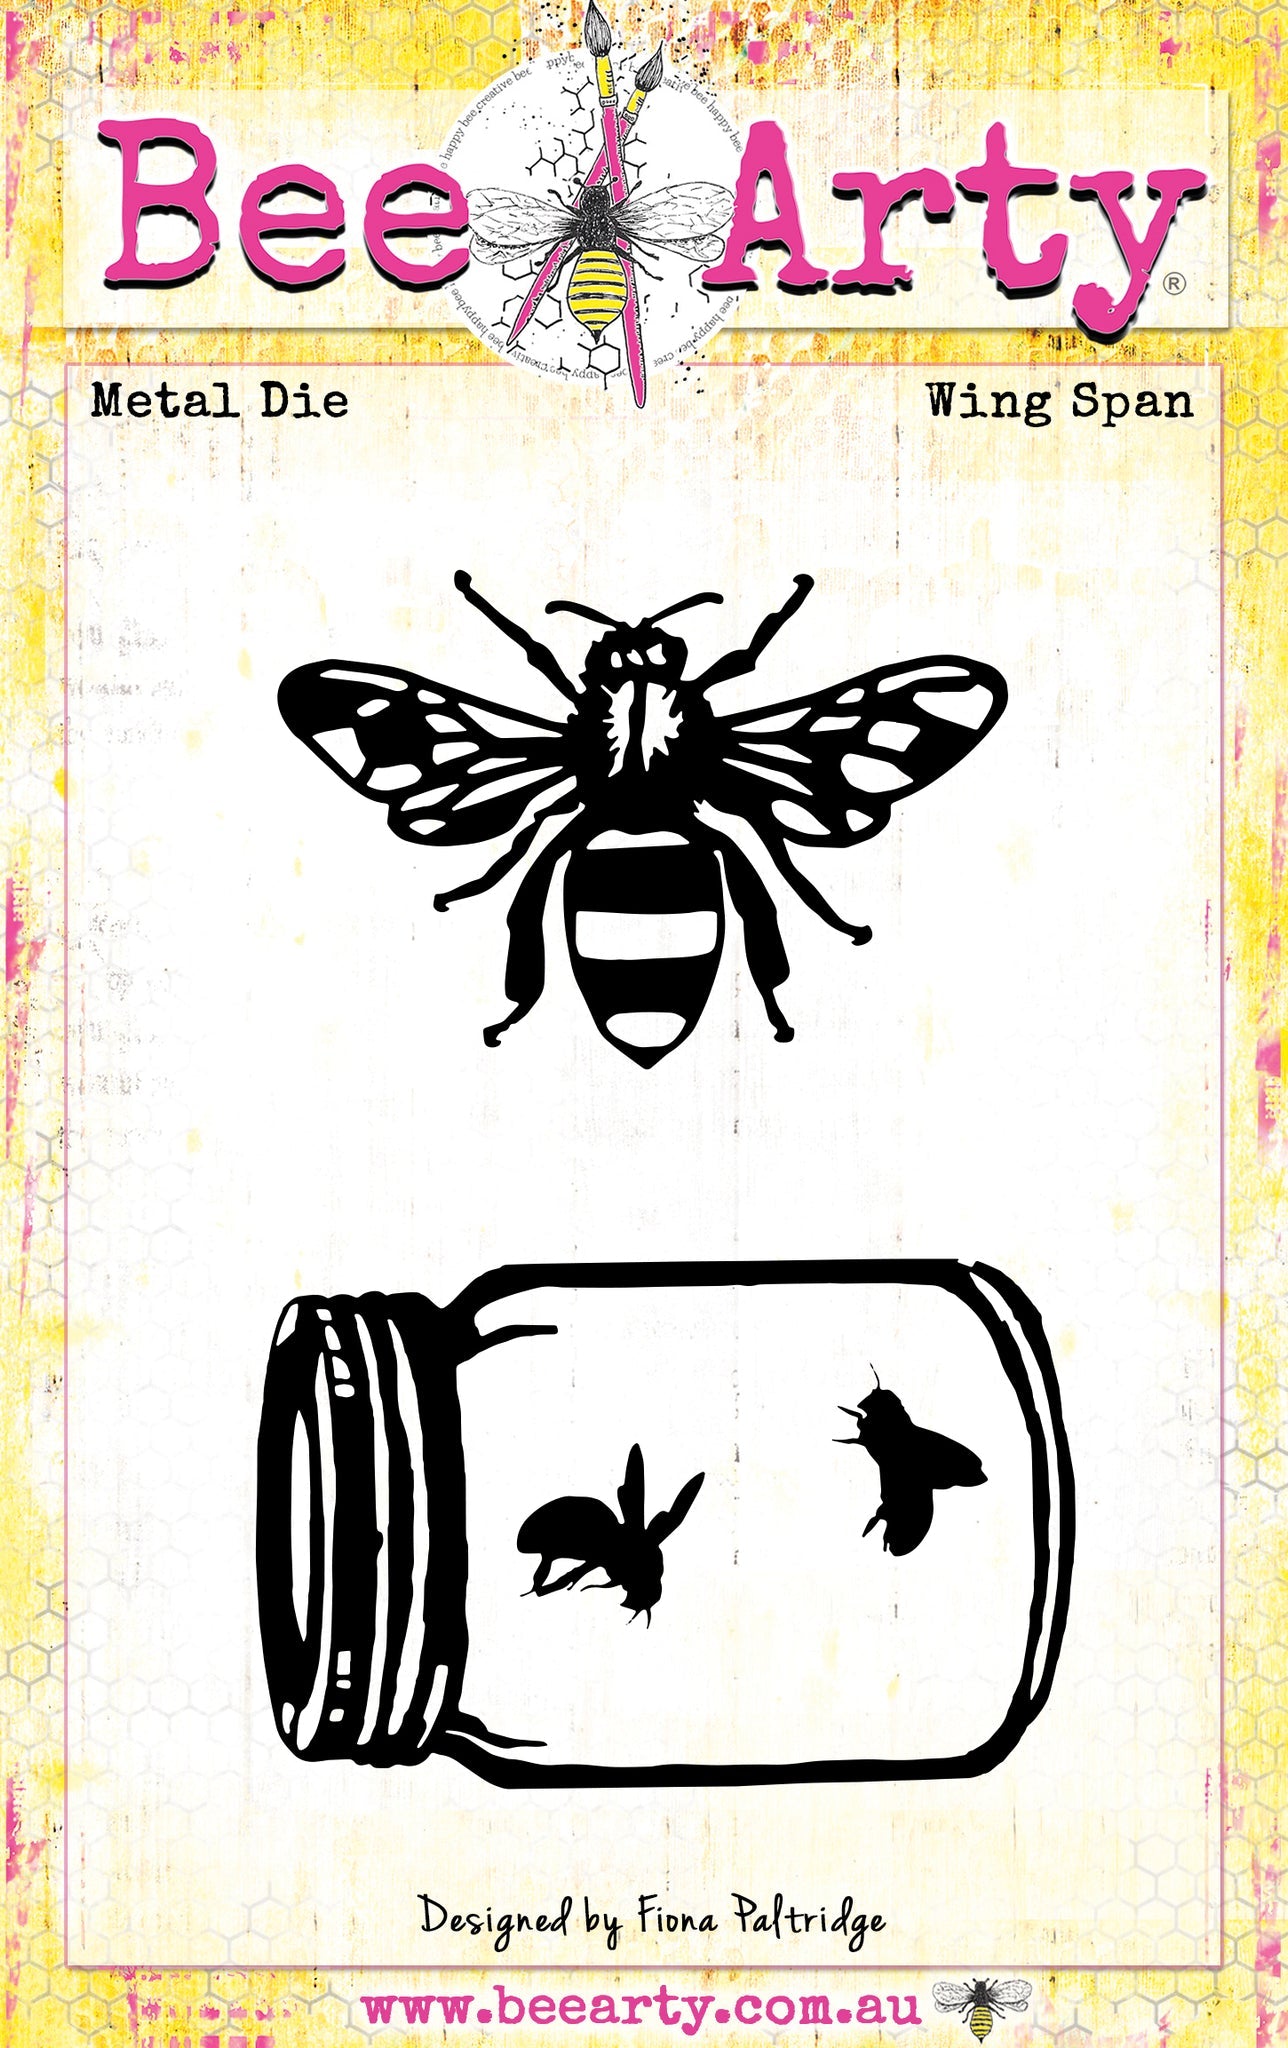 Bee Arty - Bee the Sunshine - Wing Span Metal die